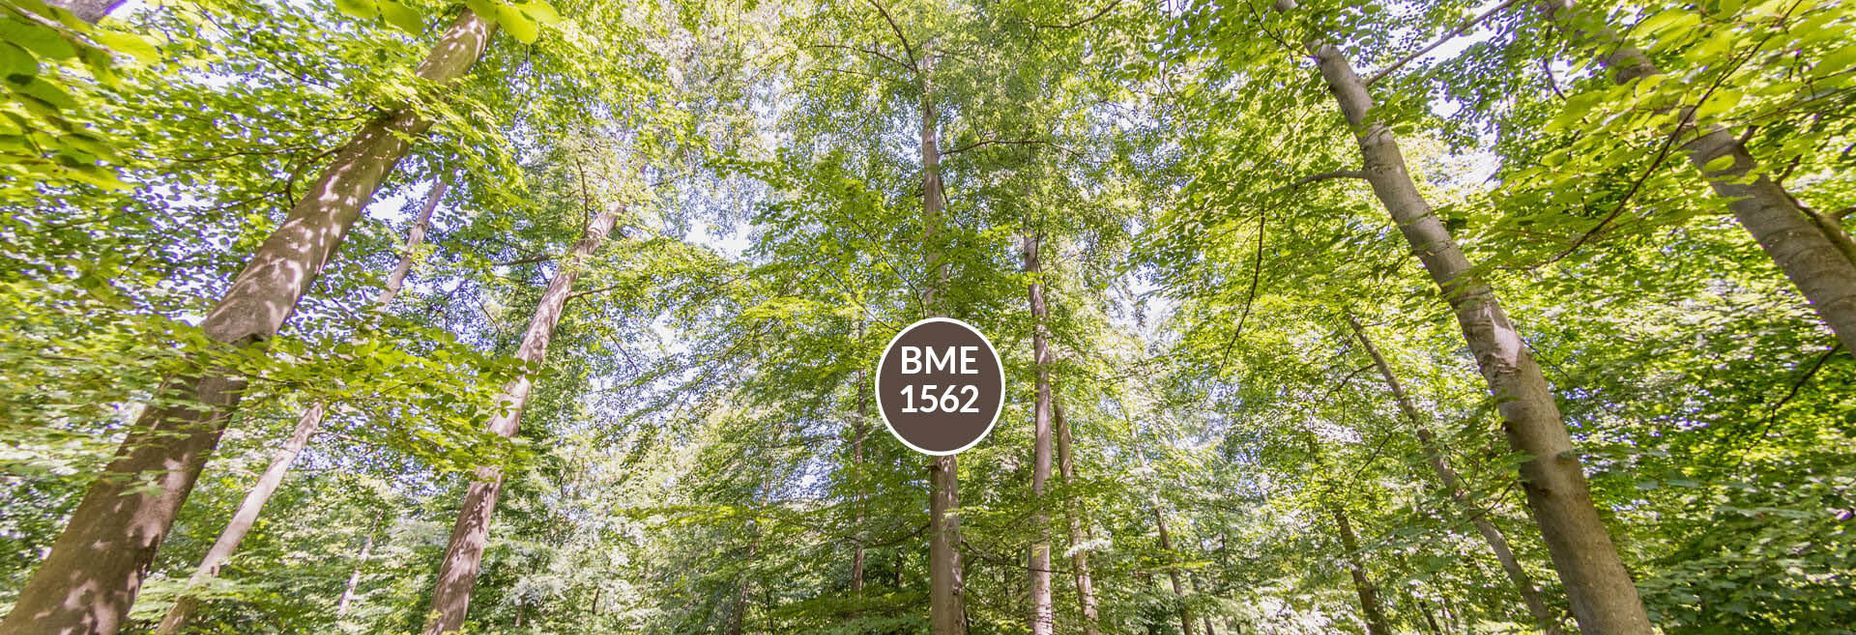 Baum BME 1562 - Fisheyeperspektive